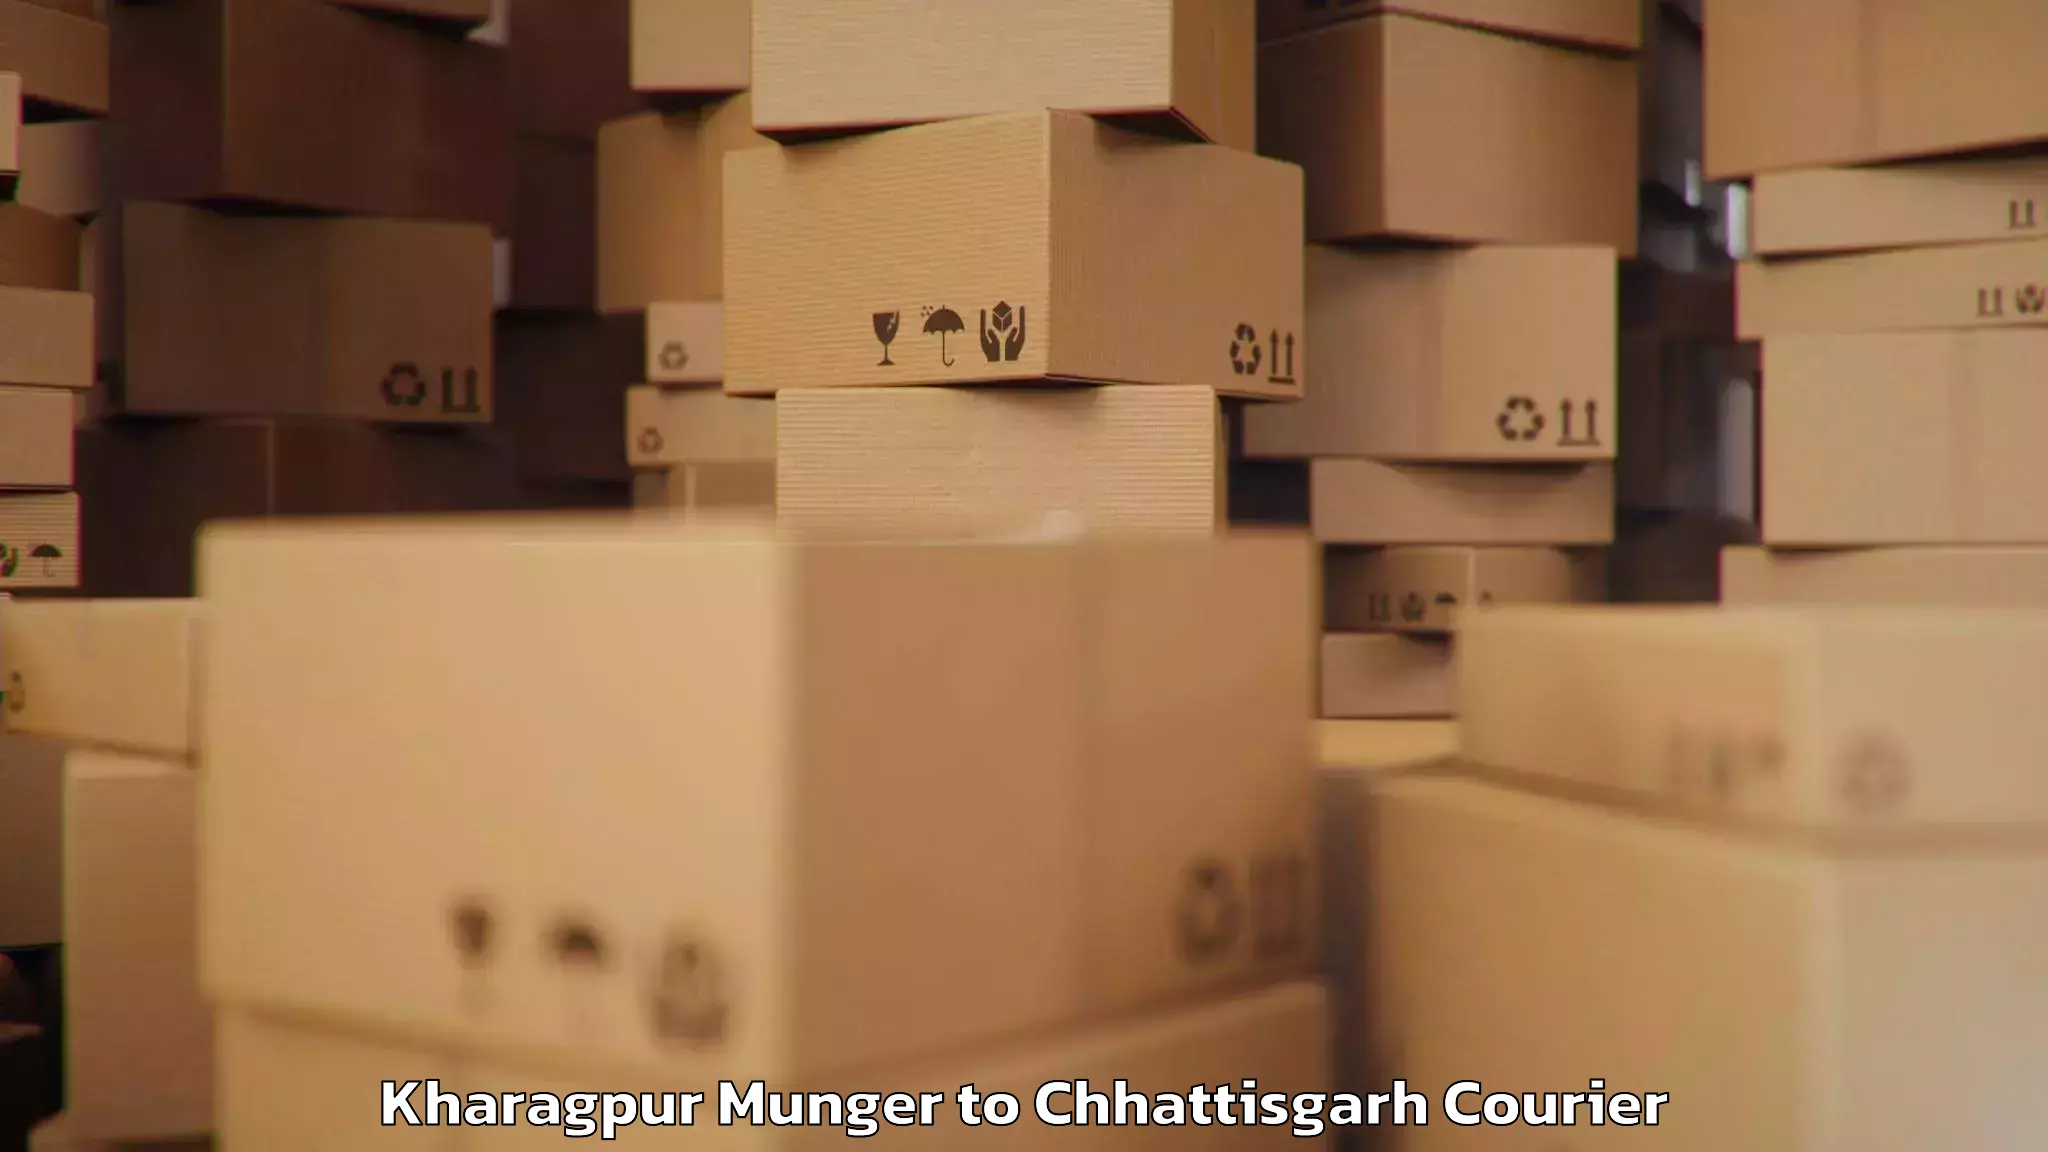 Baggage transport technology Kharagpur Munger to Dongargarh